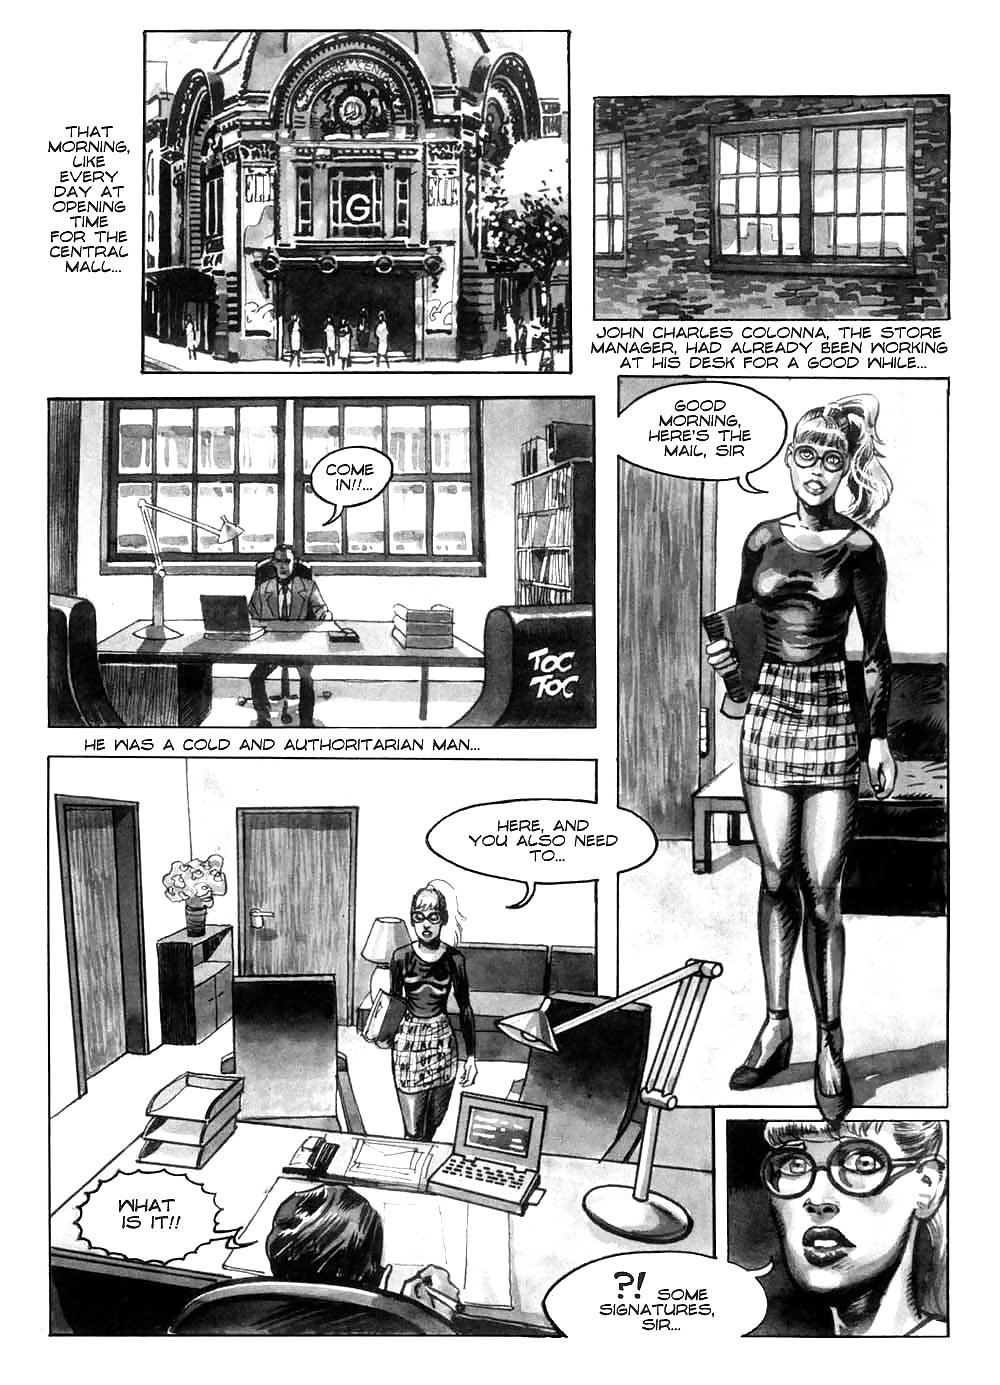 Hot comics 52 #19539495